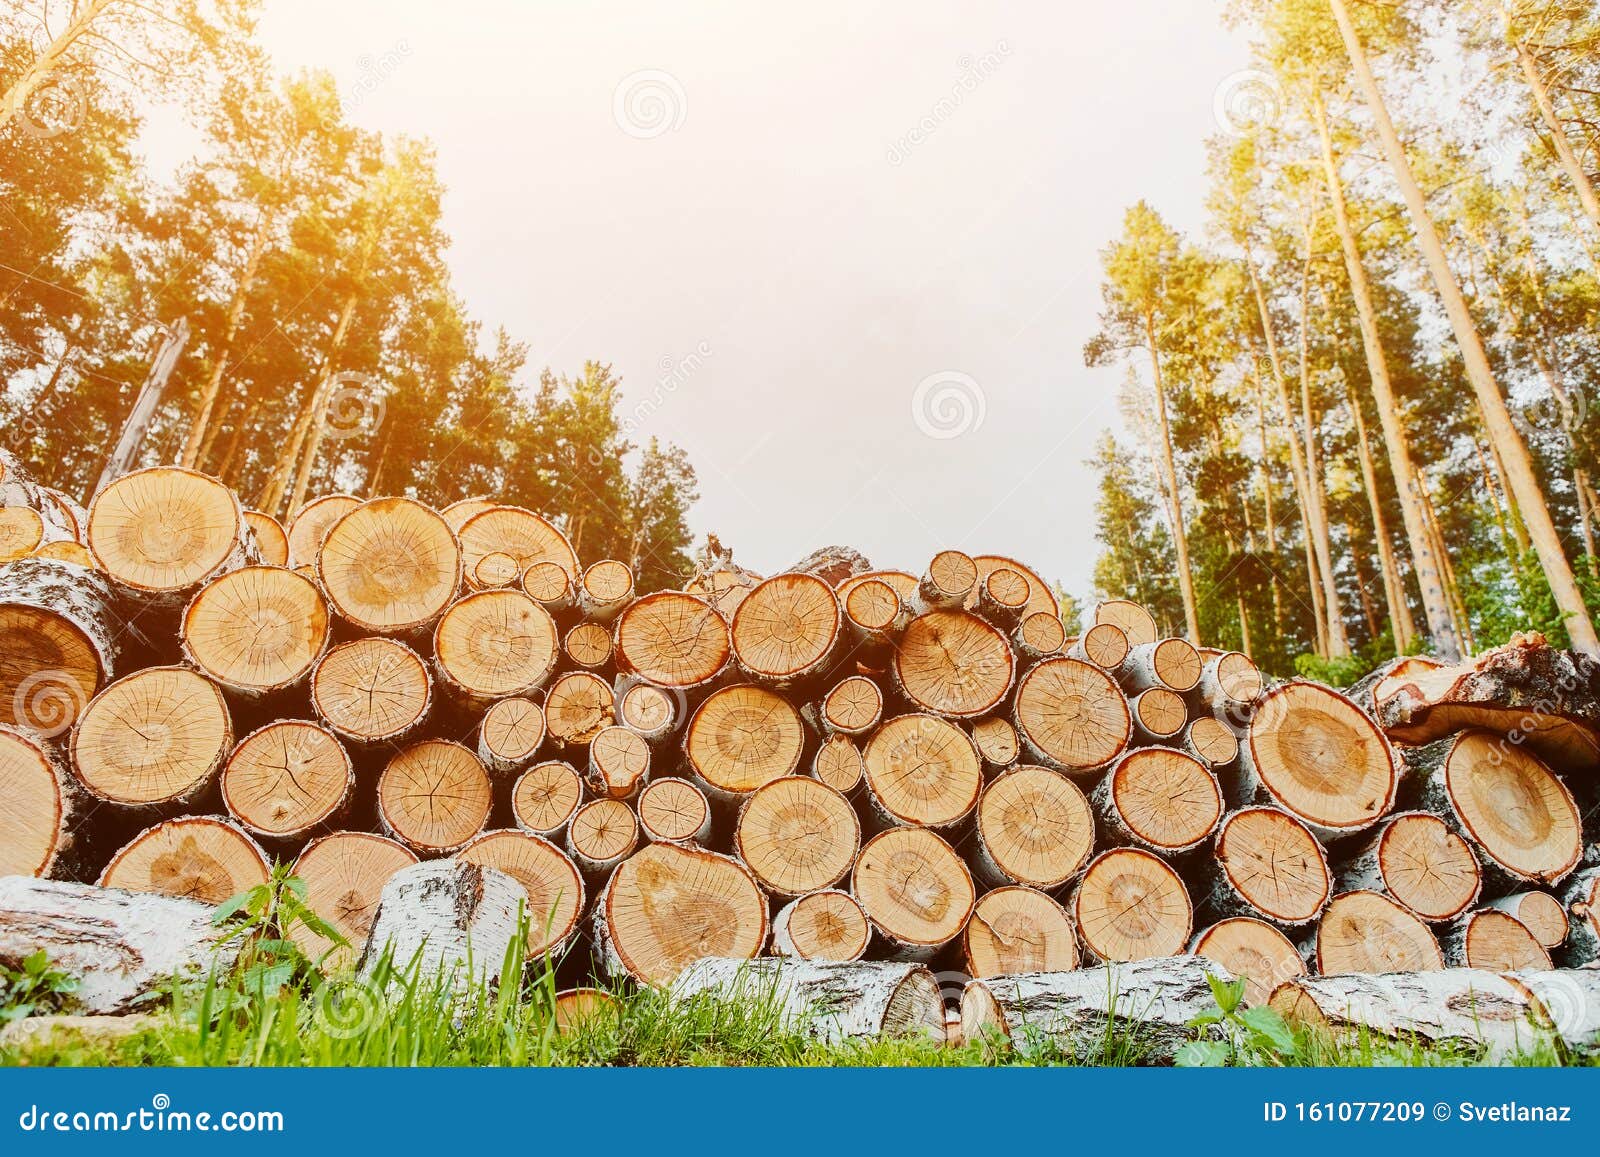 Los árboles Cortados Son Apilados Y Preparados Para Cortar En Leña Imagen  de archivo - Imagen de paisaje, corte: 161077209